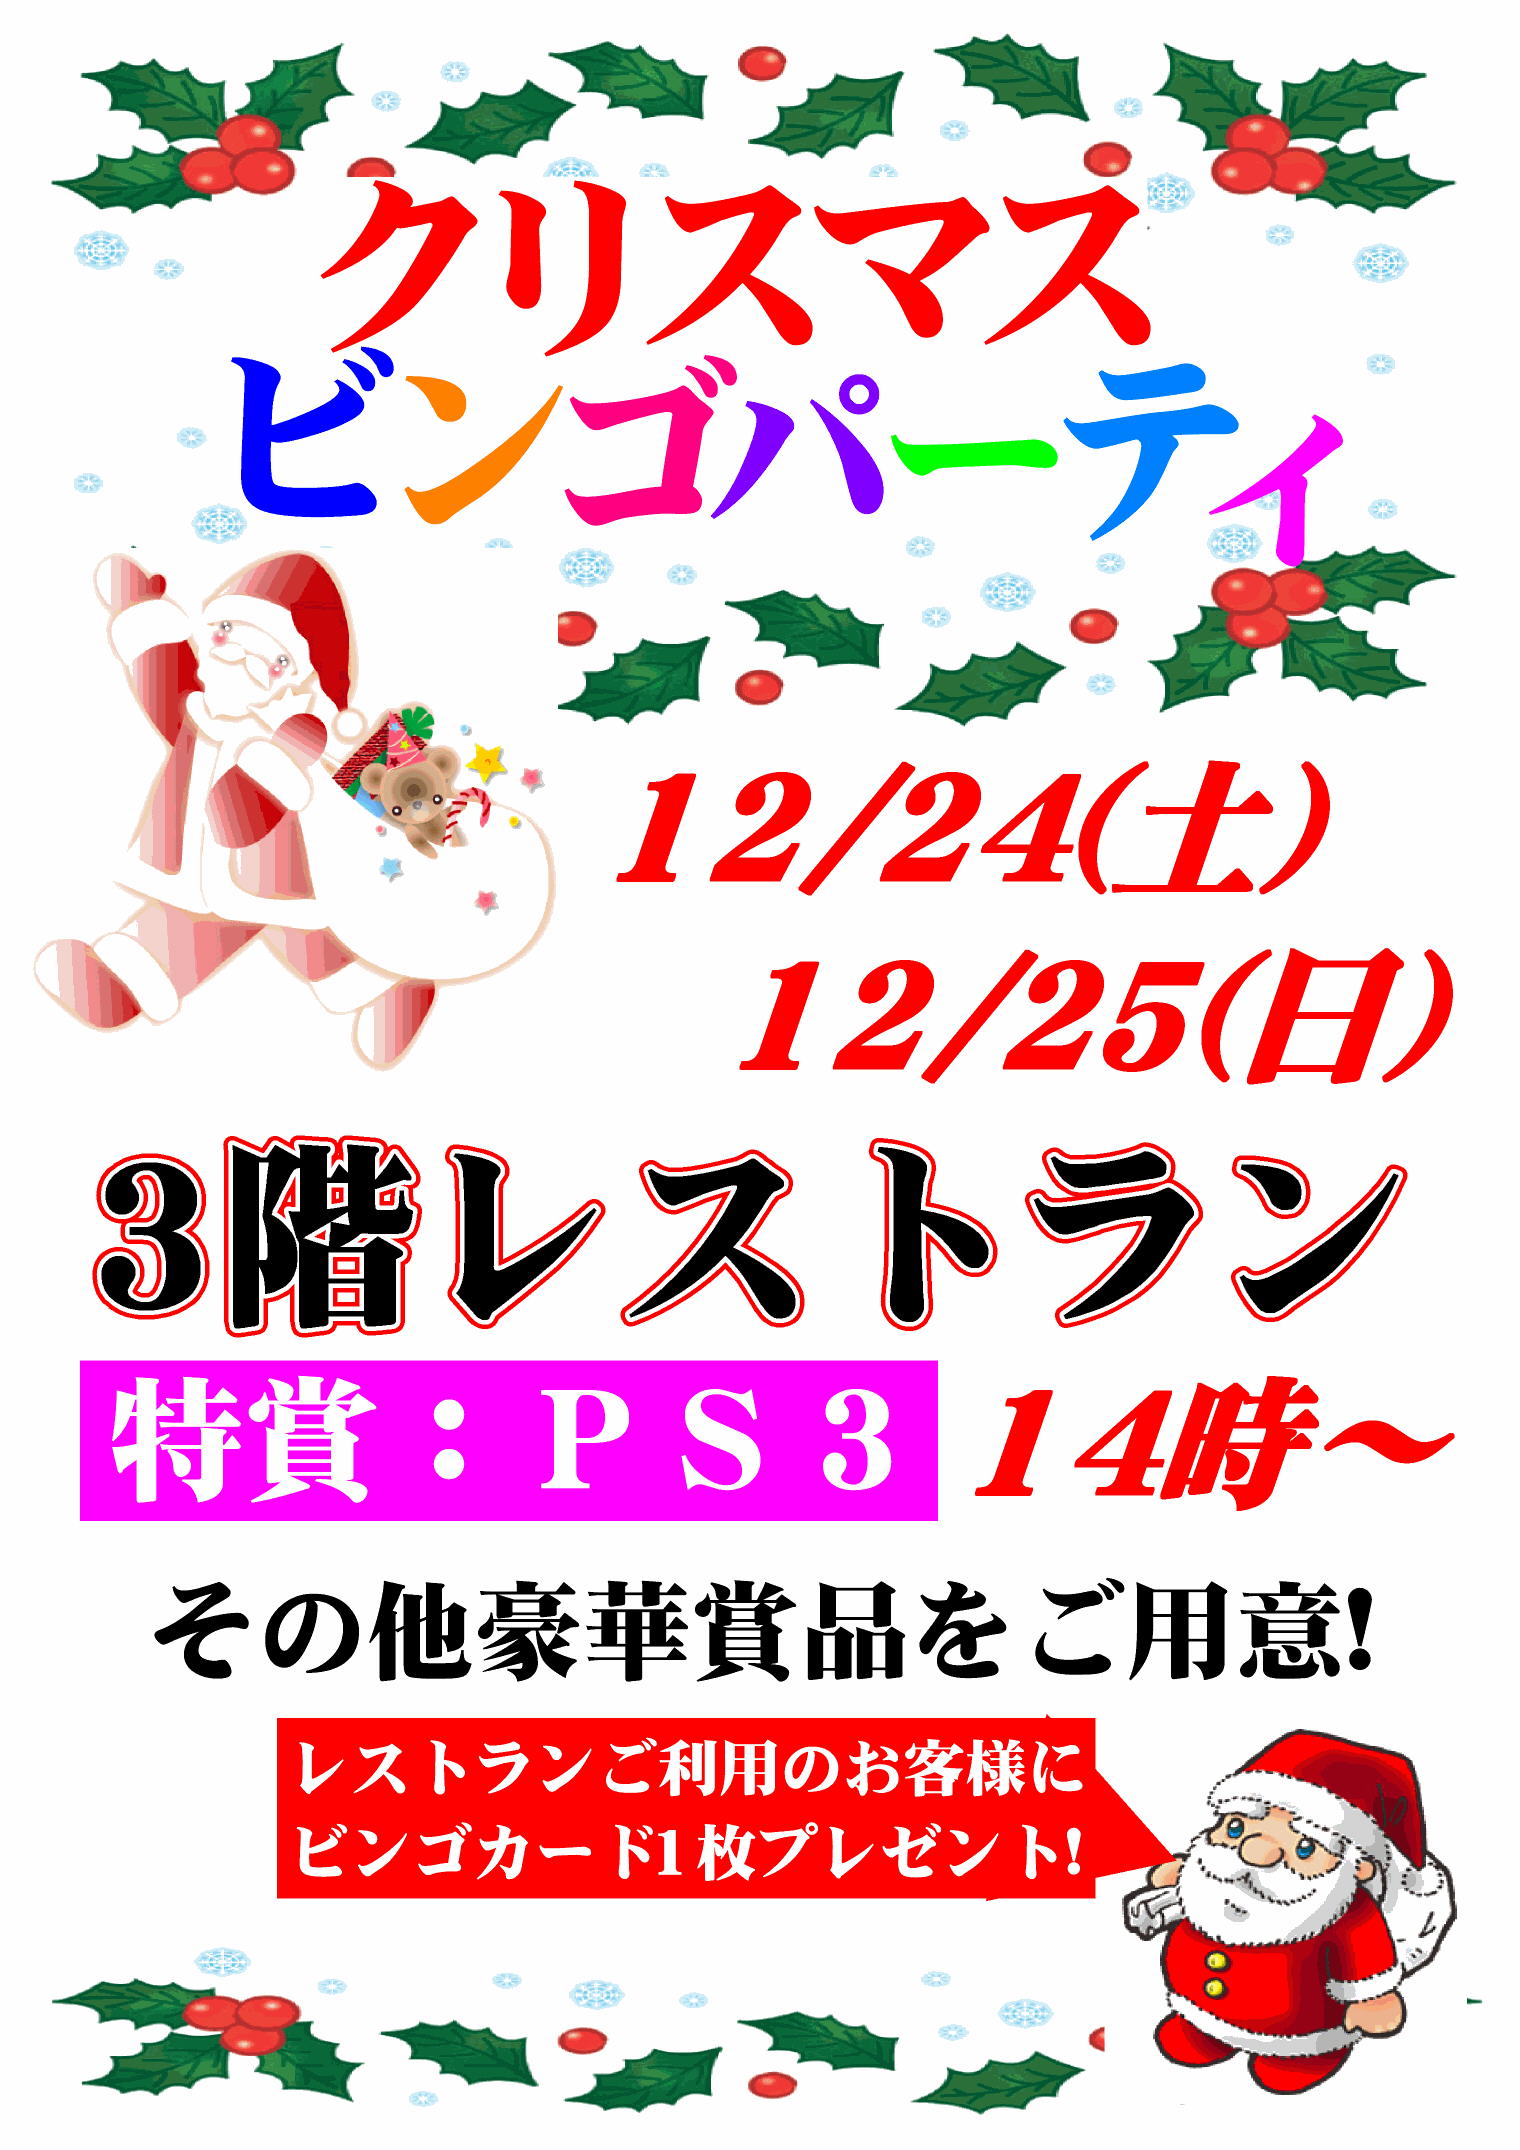 http://www.relafull.co.jp/blog/2011/12/14/12152.jpg